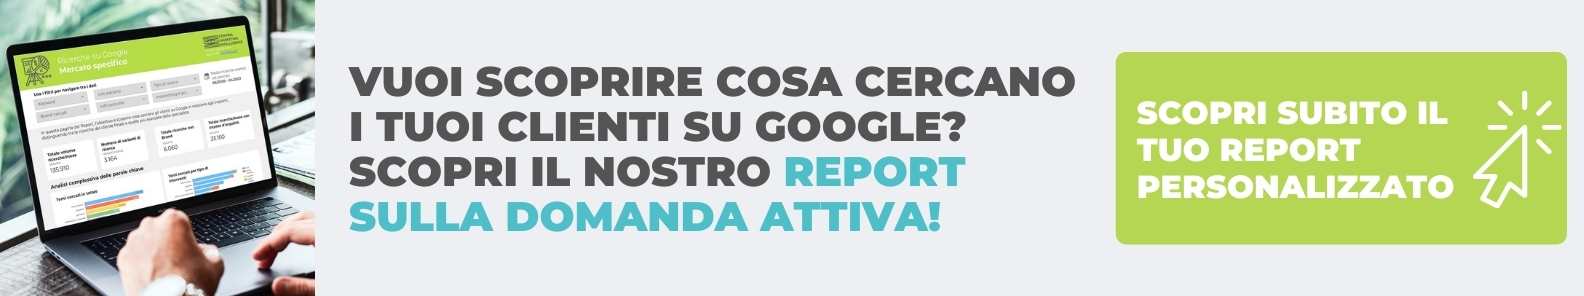 Report ricerche Google